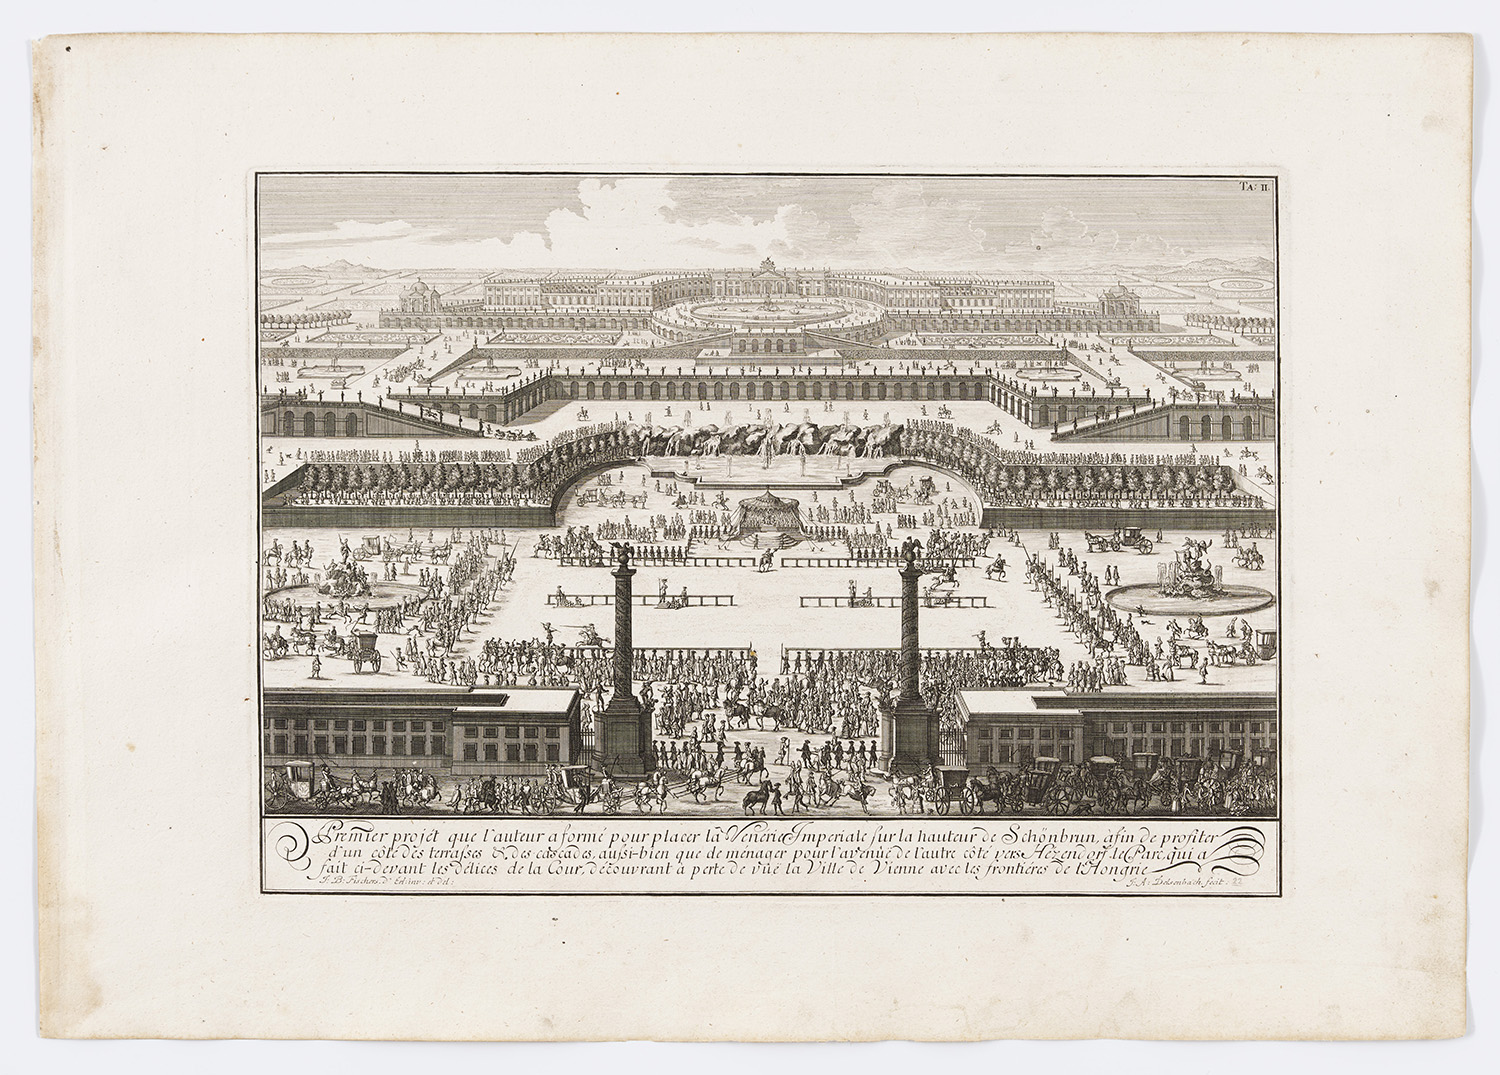 Panoramaartige Zeichnung eines Entwurfs für Schönbrunn,  schräg von oben die das gesamte Areal davor zeigt. Mit vielen Menschen, Kutschen und Pferden